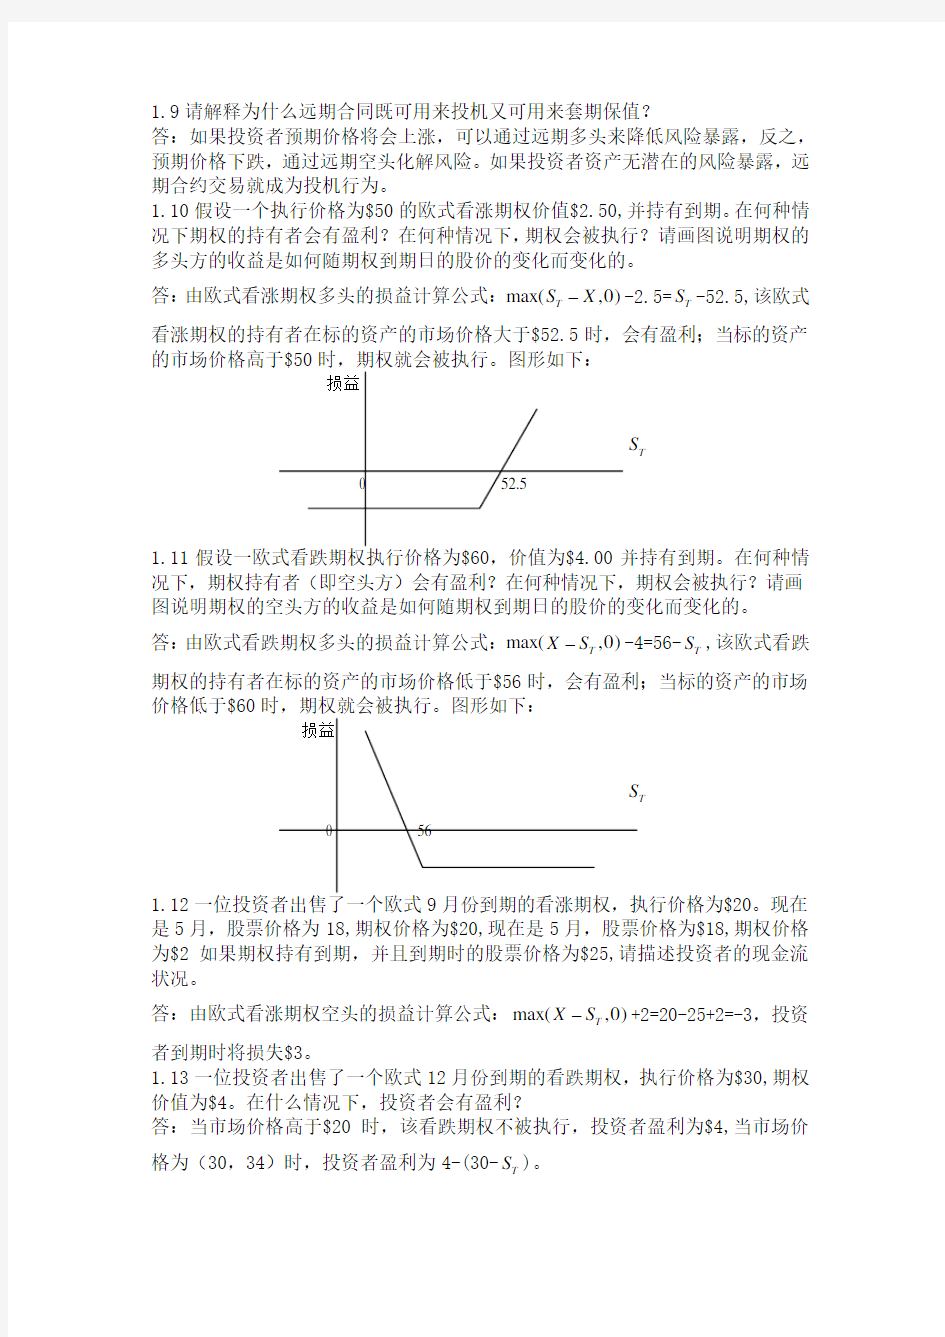 【经典】约翰赫尔 期权期货其他衍生品 课后习题解答 完整 中文版-1-20习题解答【完整版】